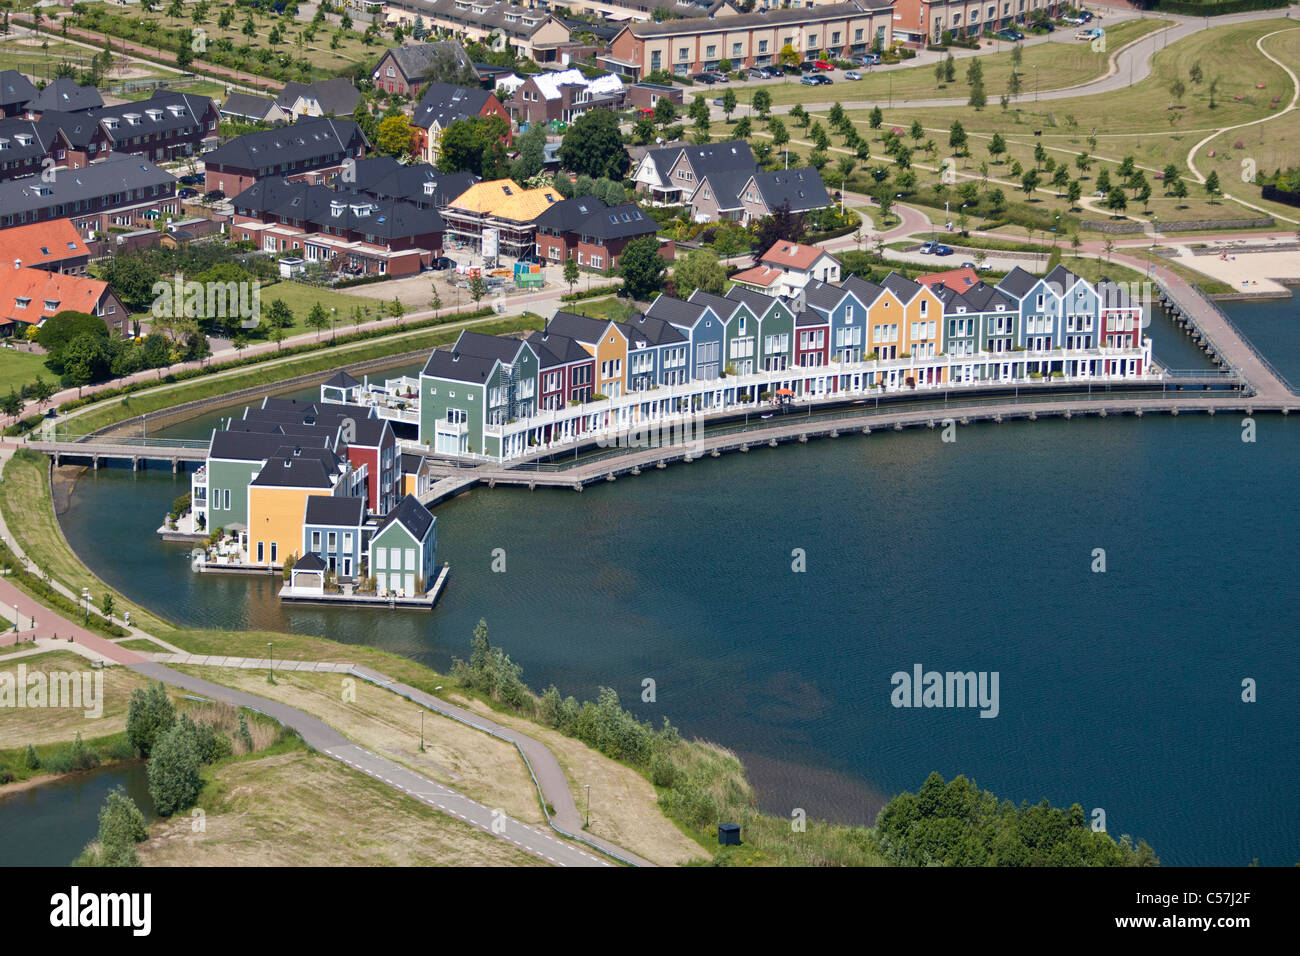 Olanda, Houten, moderno quartiere residenziale. Antenna. Ville sull'acqua. Foto Stock